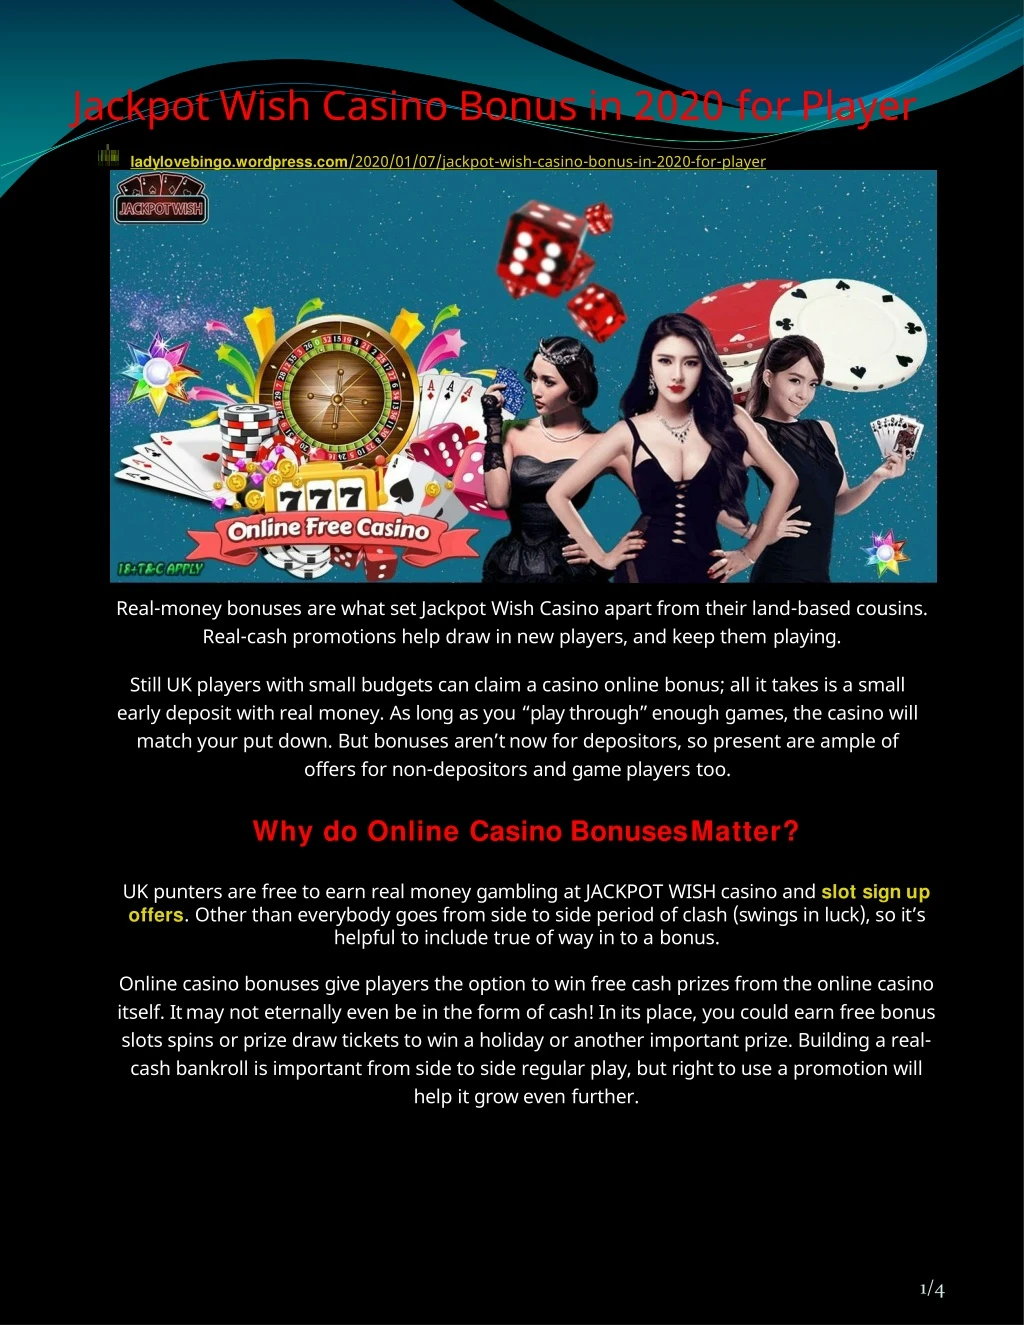 jackpot wish casino bonus in 2020 for player